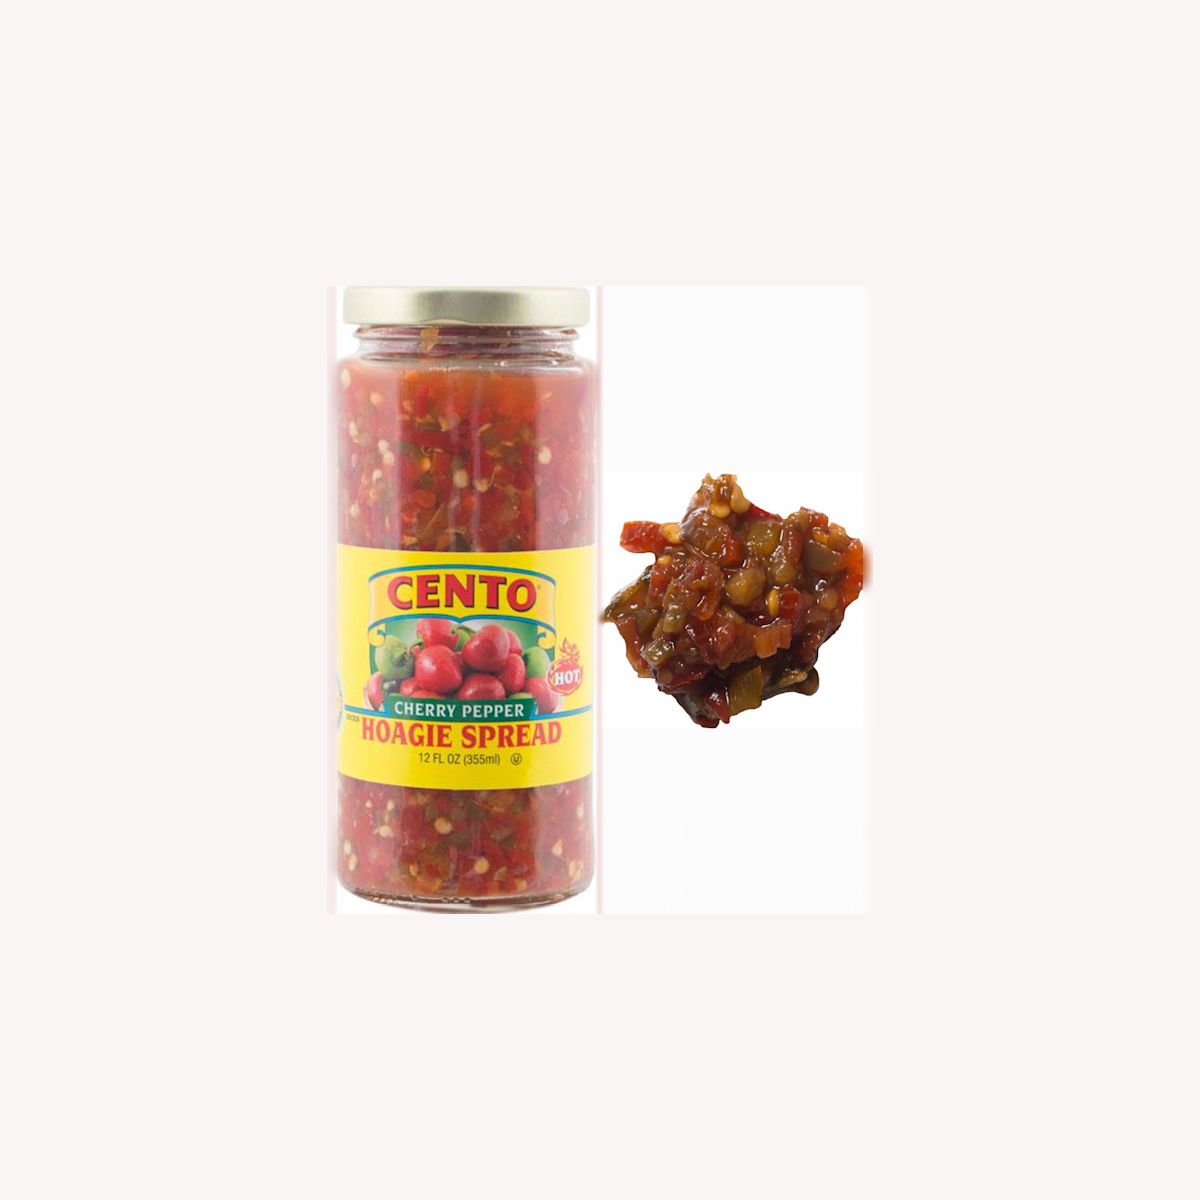 Cento Diced Hot Cherry Pepper Hoagie Spread 12 FL OZ Shop Cento